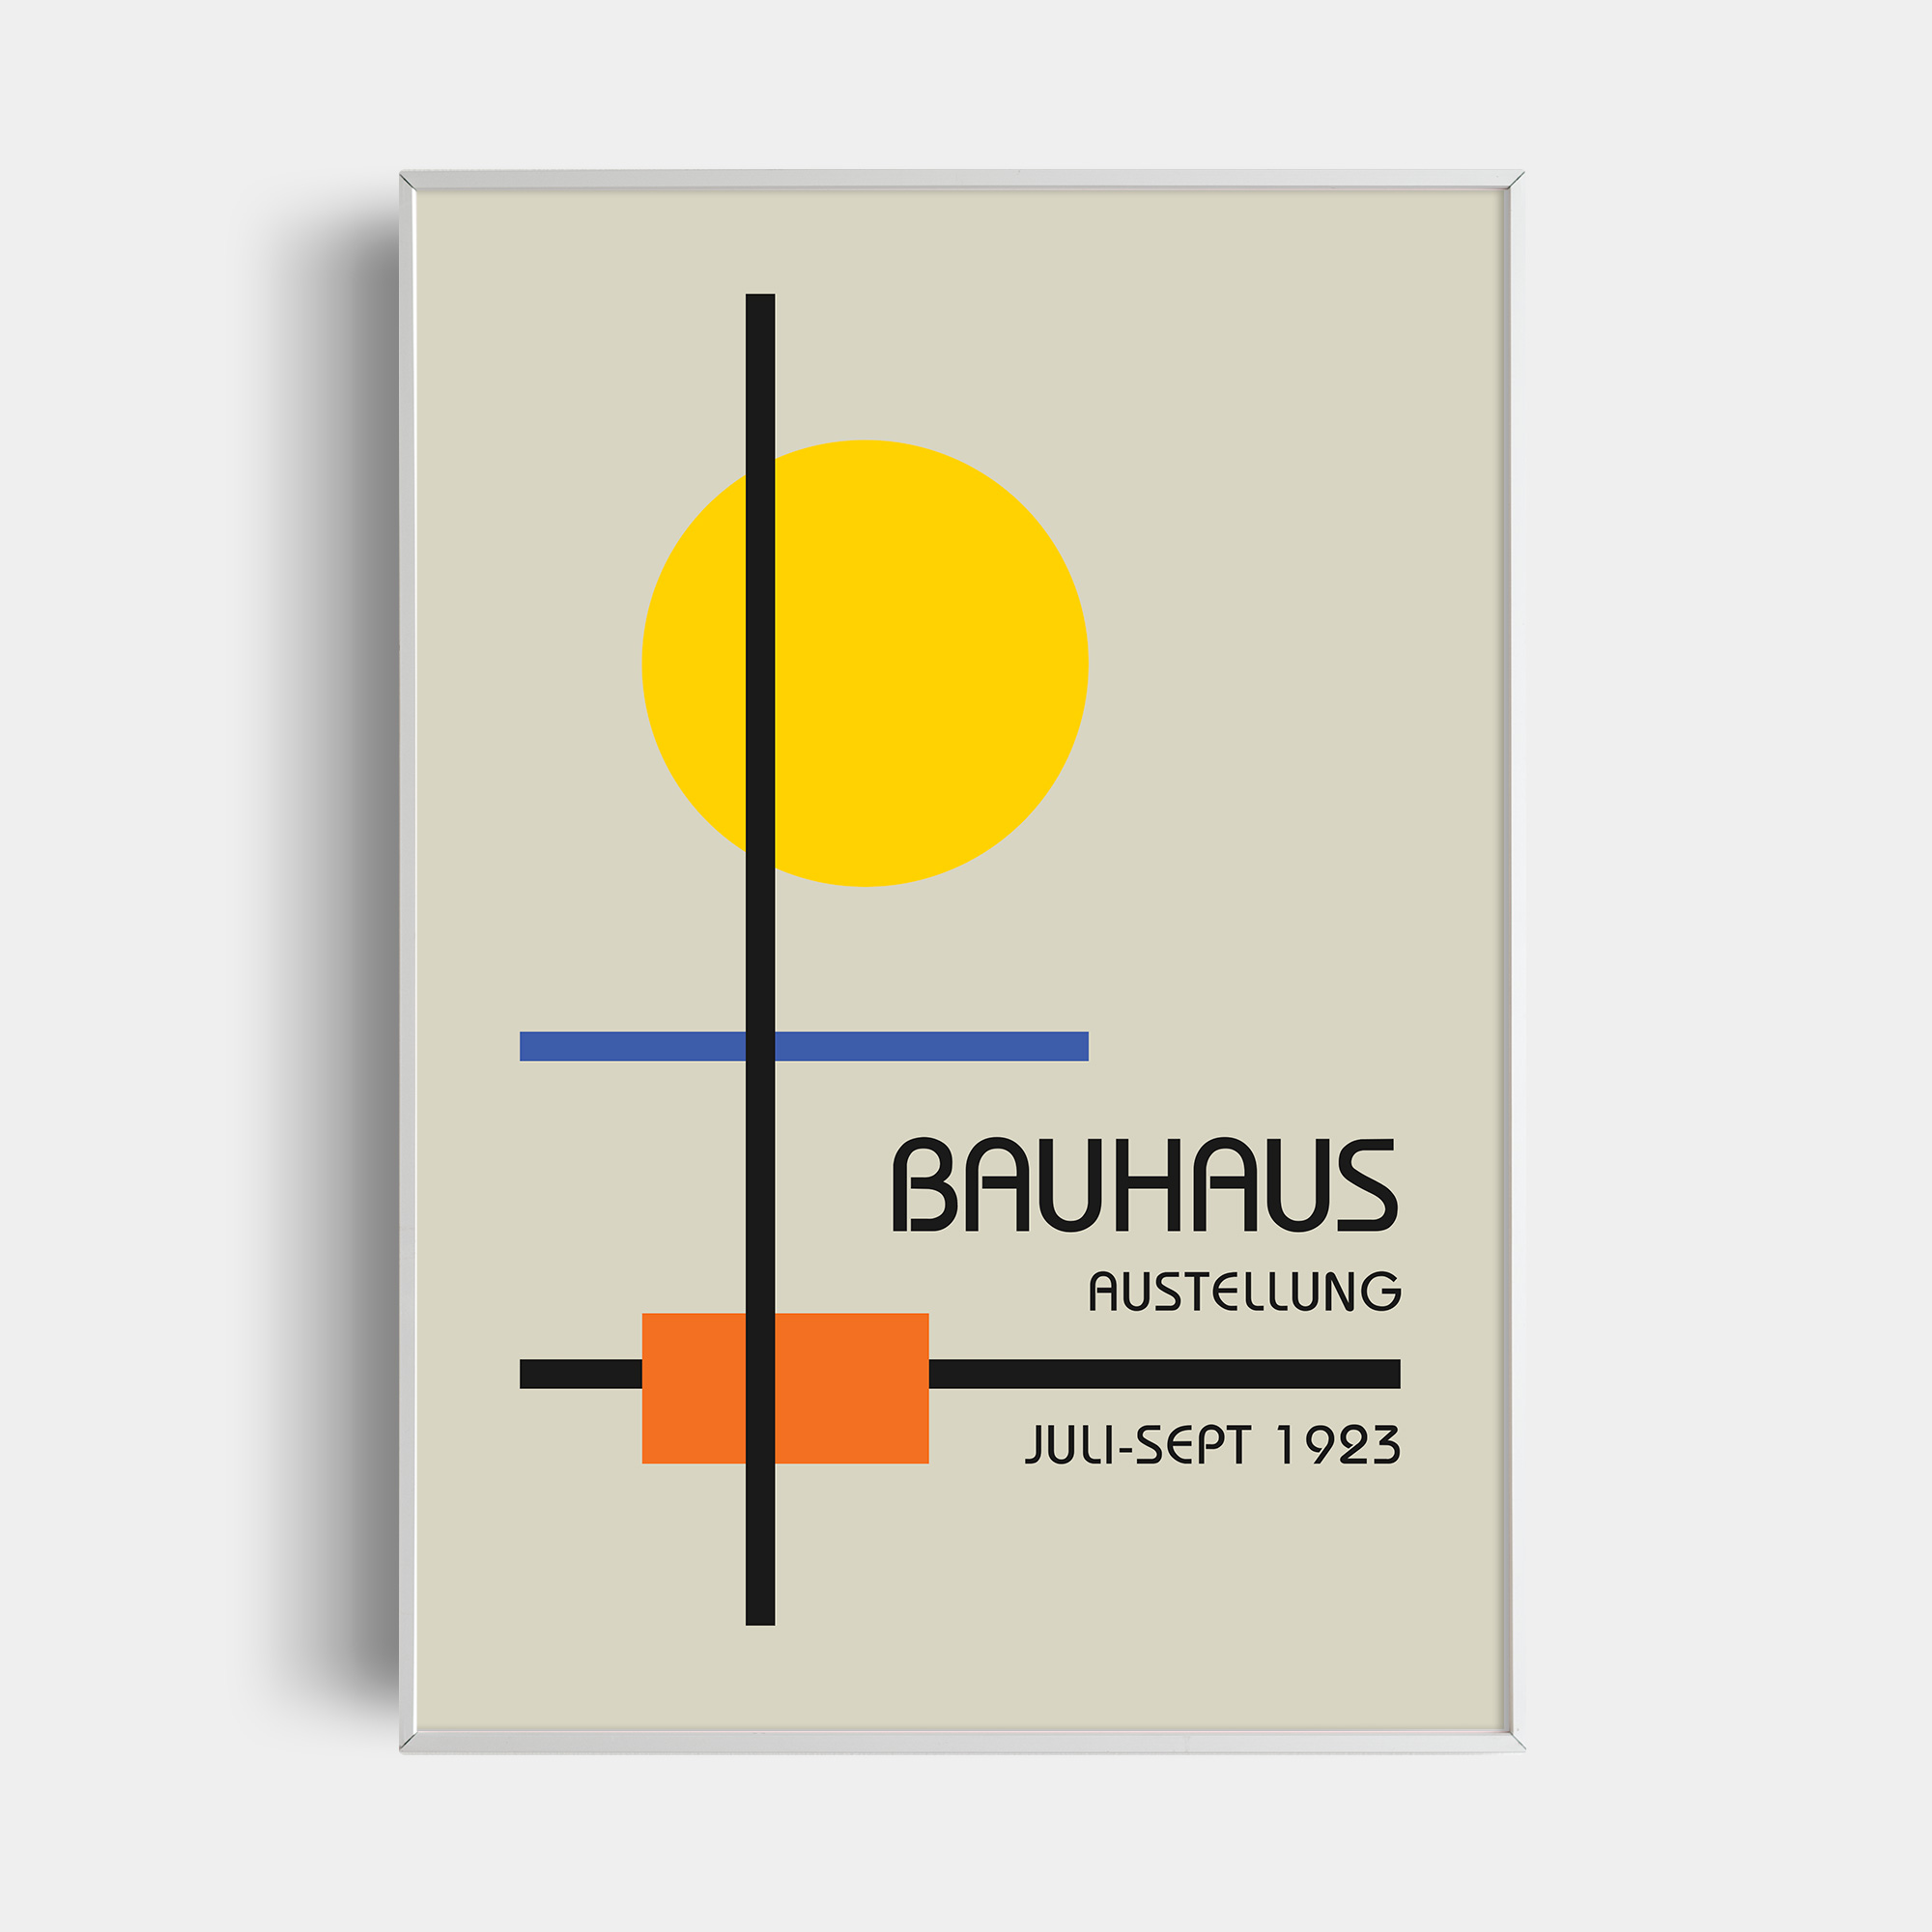 https://pdfposters.com/wp-content/uploads/2021/04/0448-Bauhaus-Art-Poster.jpg